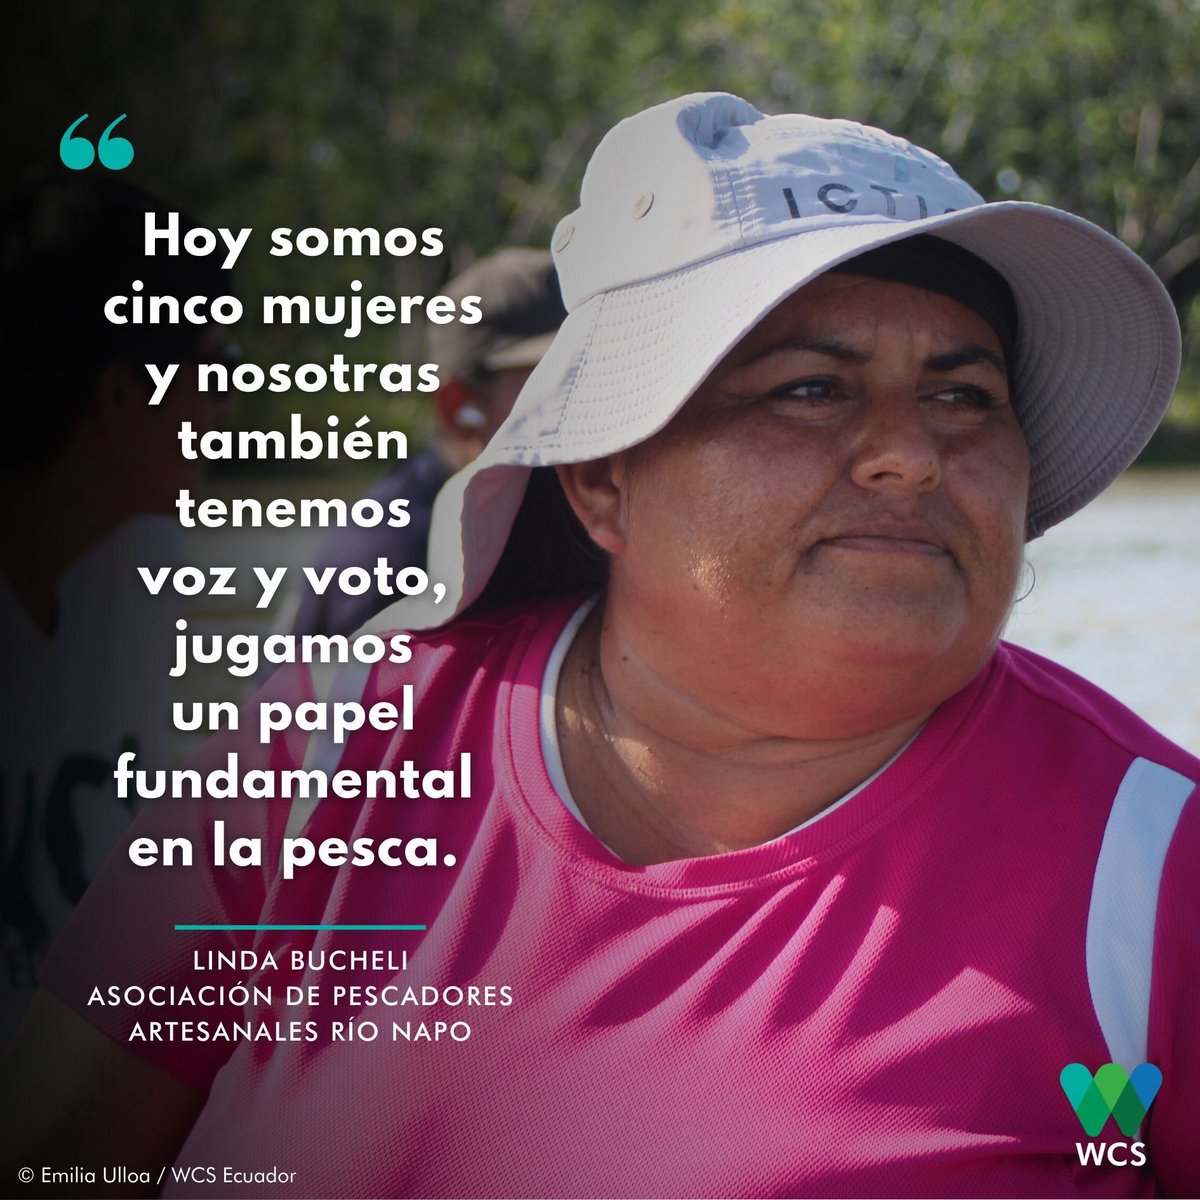 #WeStandForWildlife 🤩 | #LindaBucheli, presidenta de la Asociación de Pescadores Artesanales #RíoNapo, y las mujeres que forman parte de esta organización, participan activamente en todas las fases de la #Pesca.  🎣🧡💜
➡️bit.ly/diapescawcs
🖐️ #JuntosPorLaVidaSilvestre 💚💙